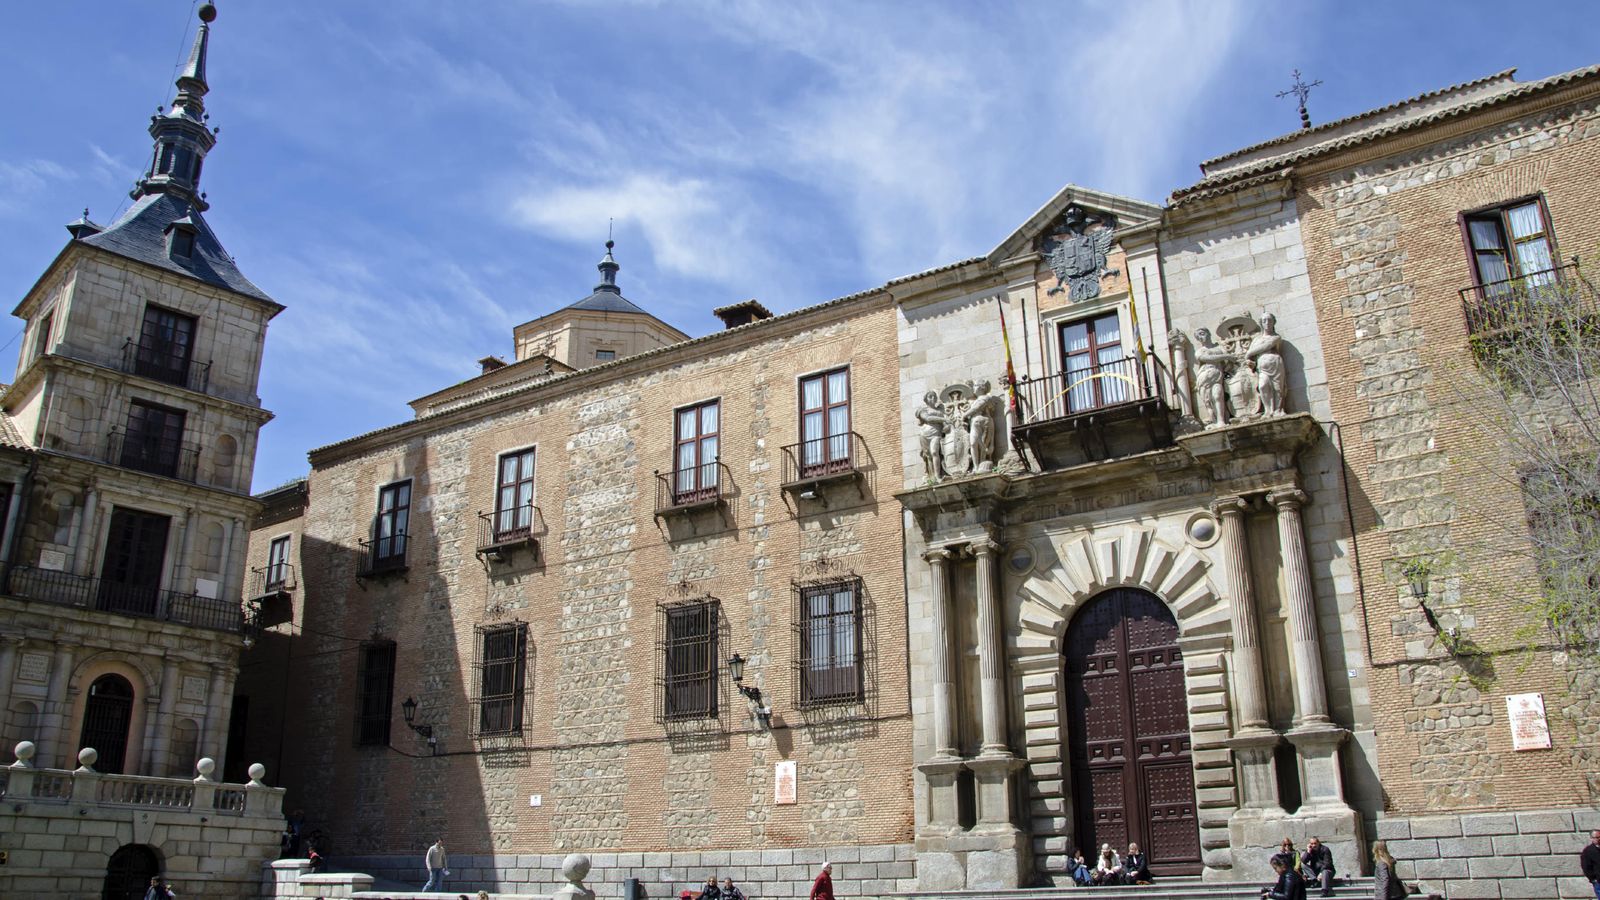 Foto: El Ayuntamiento de Toledo. (iStock)